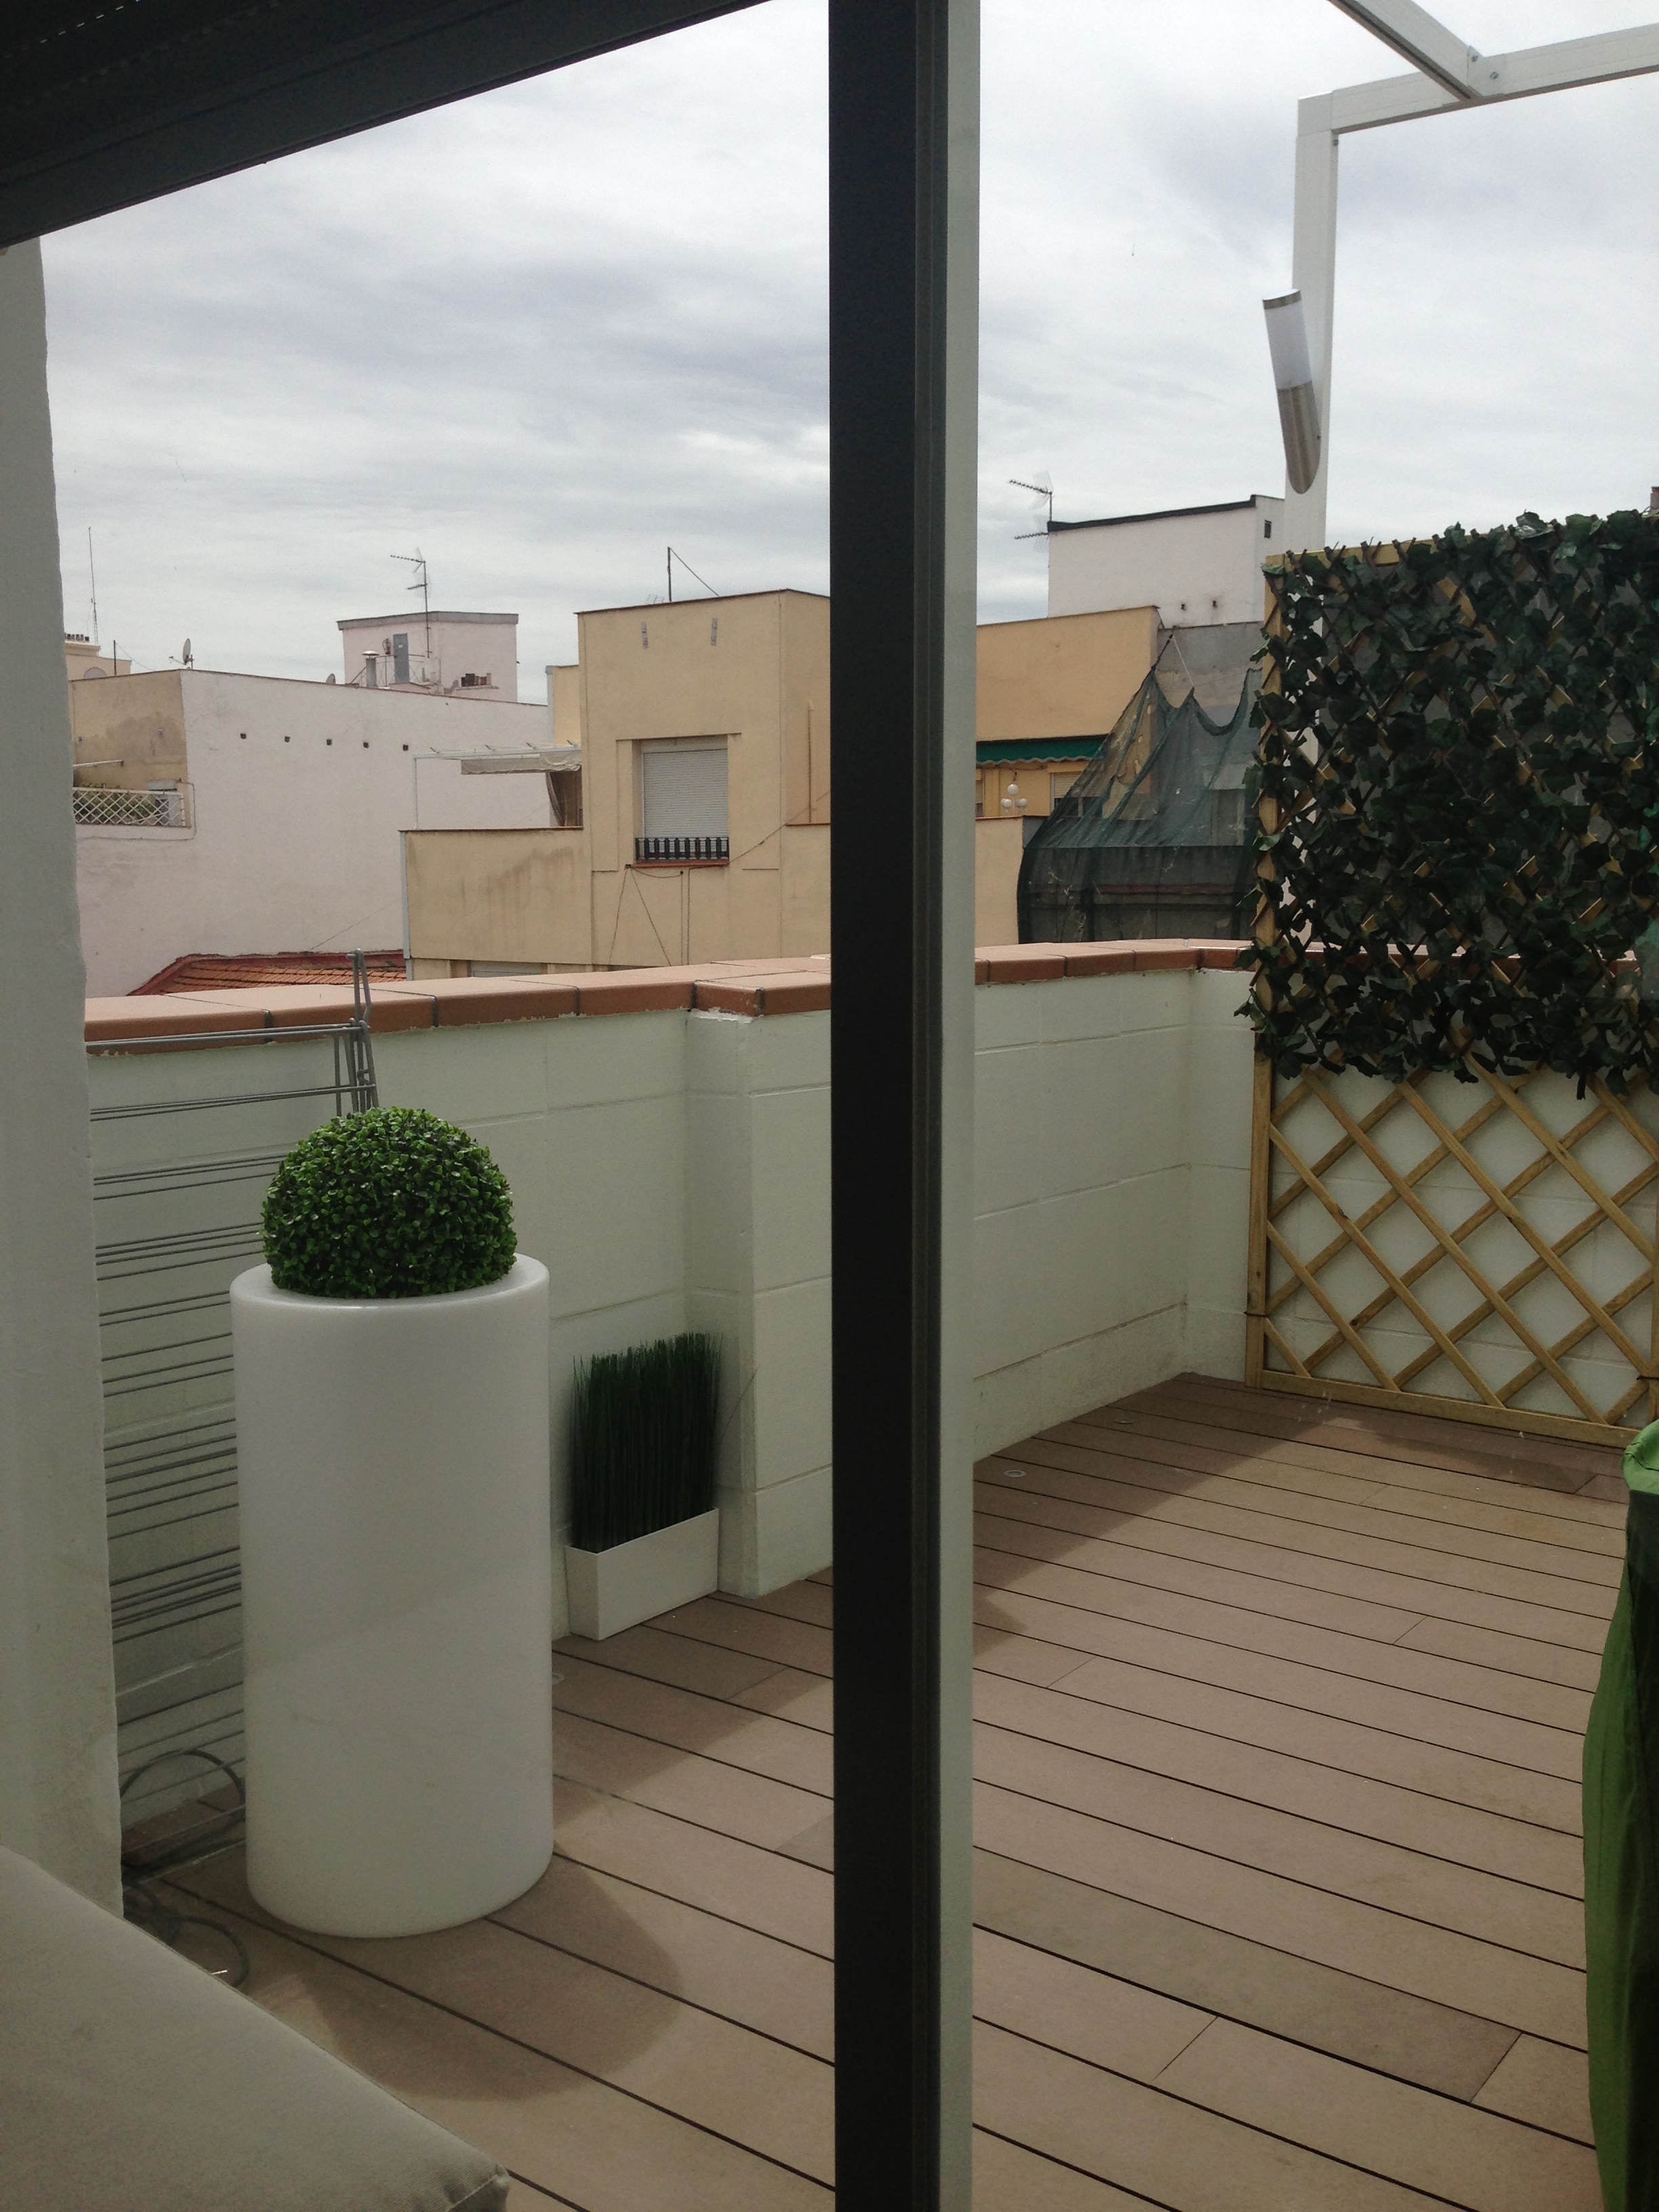 Estudio-de-Aquitectura-Madrid-DL-Interiorismo-Detalles-Terraza